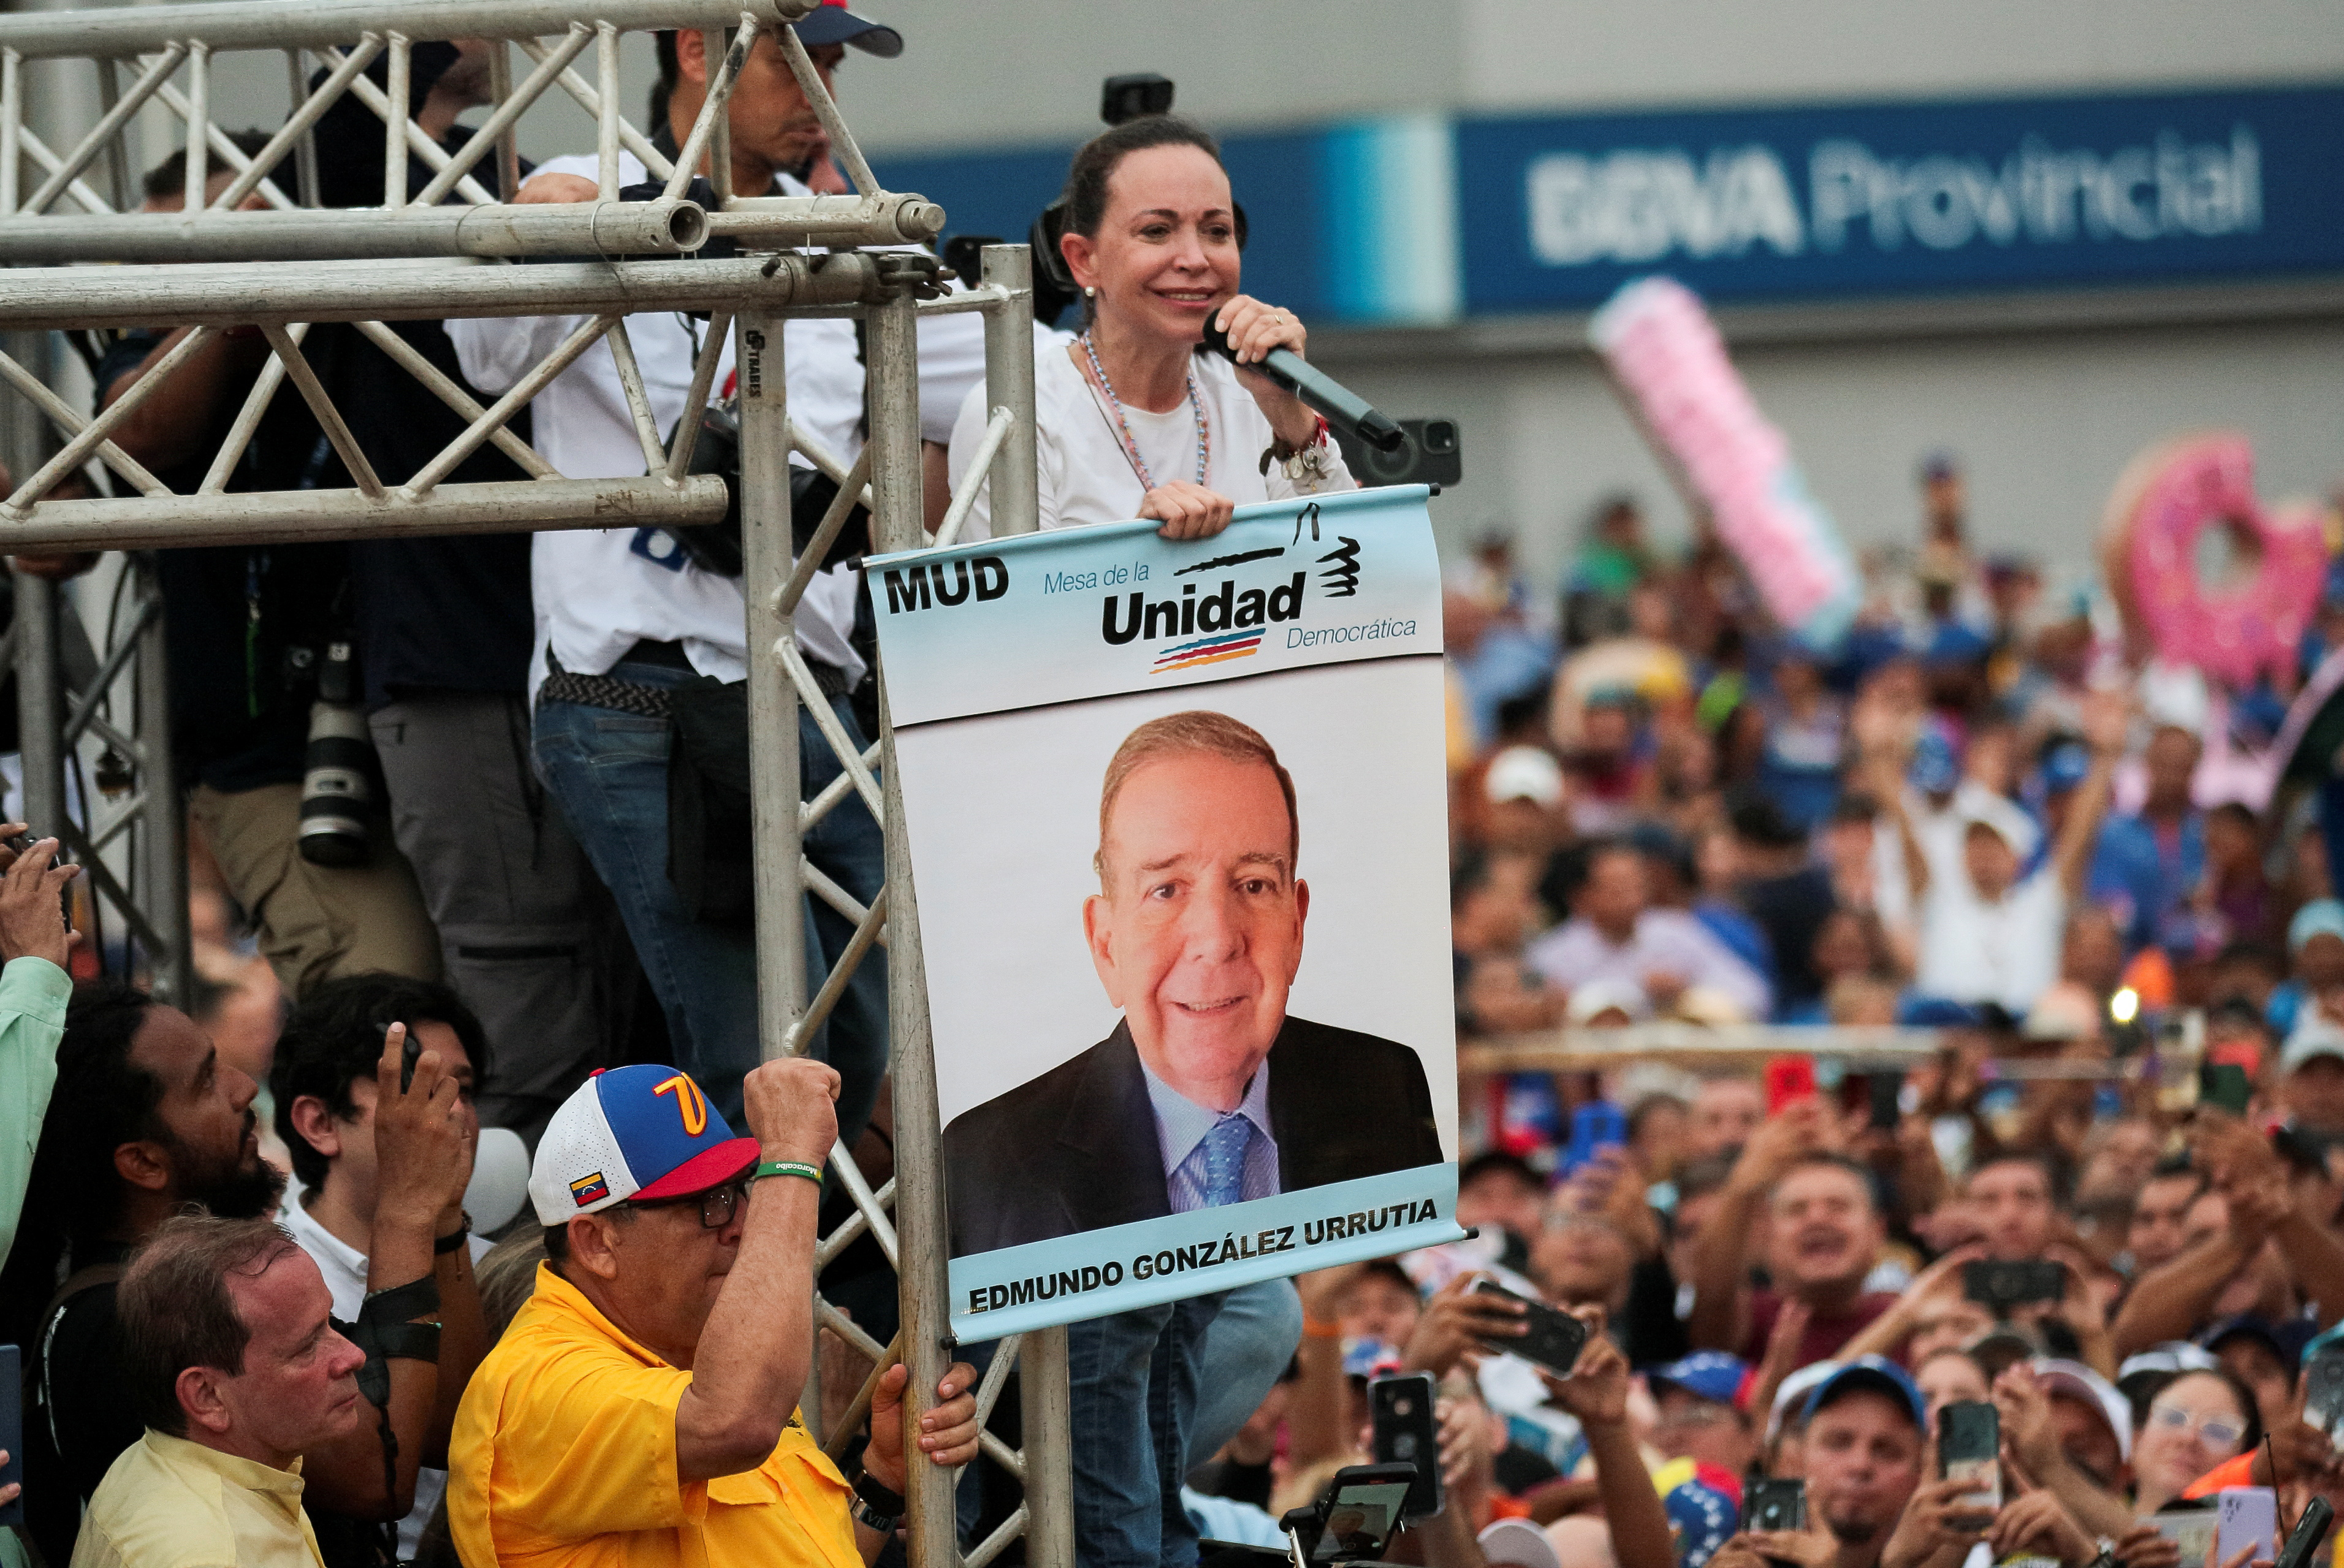 Venezuelan opposition leader Machado campaigns for opposition candidate Gonzalez, in Maracaibo